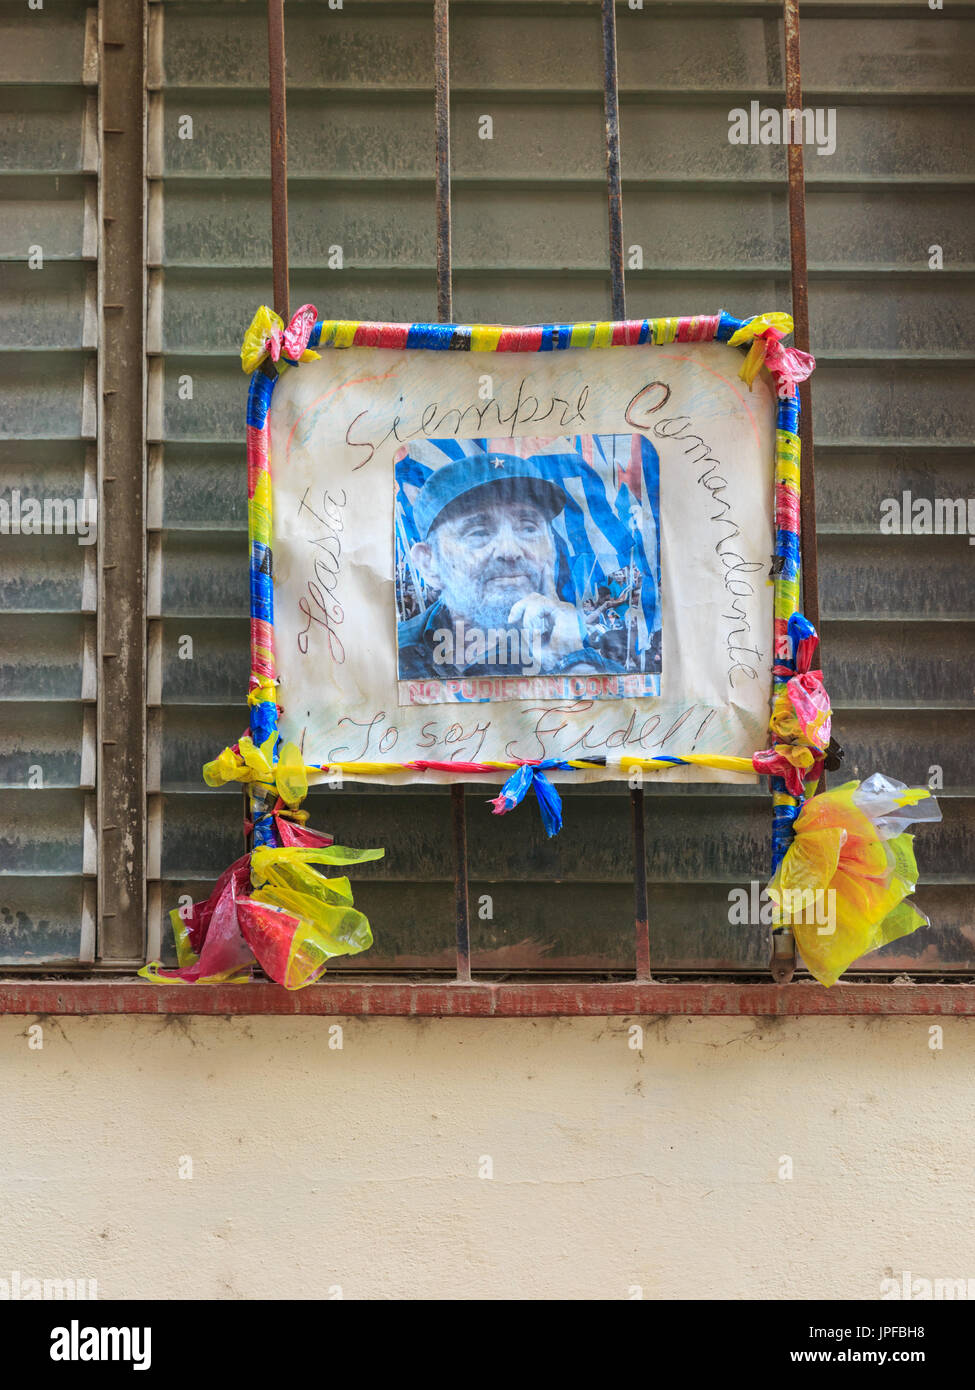 Denkmal-Bild von Fidel Castro mit "Hasta Siempre Comandante" und "Yo Soy Fidel" geschrieben, in Fenster, Havanna, Kuba Stockfoto